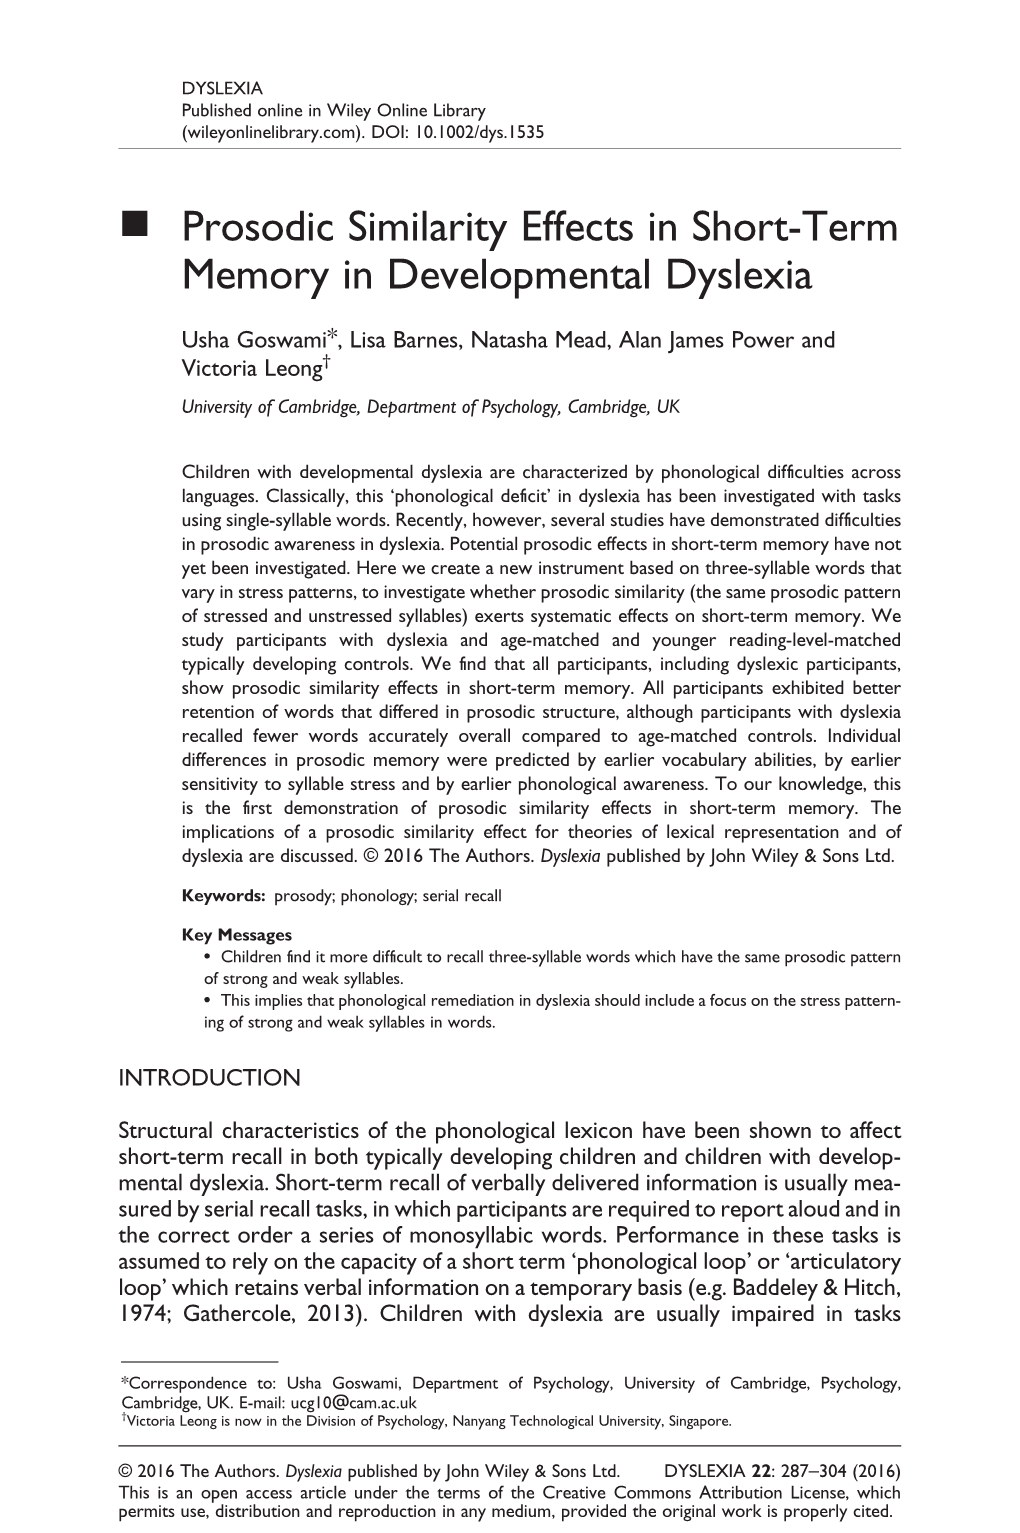 Prosodic Similarity Effects in Short-Term Memory in Developmental Dyslexia